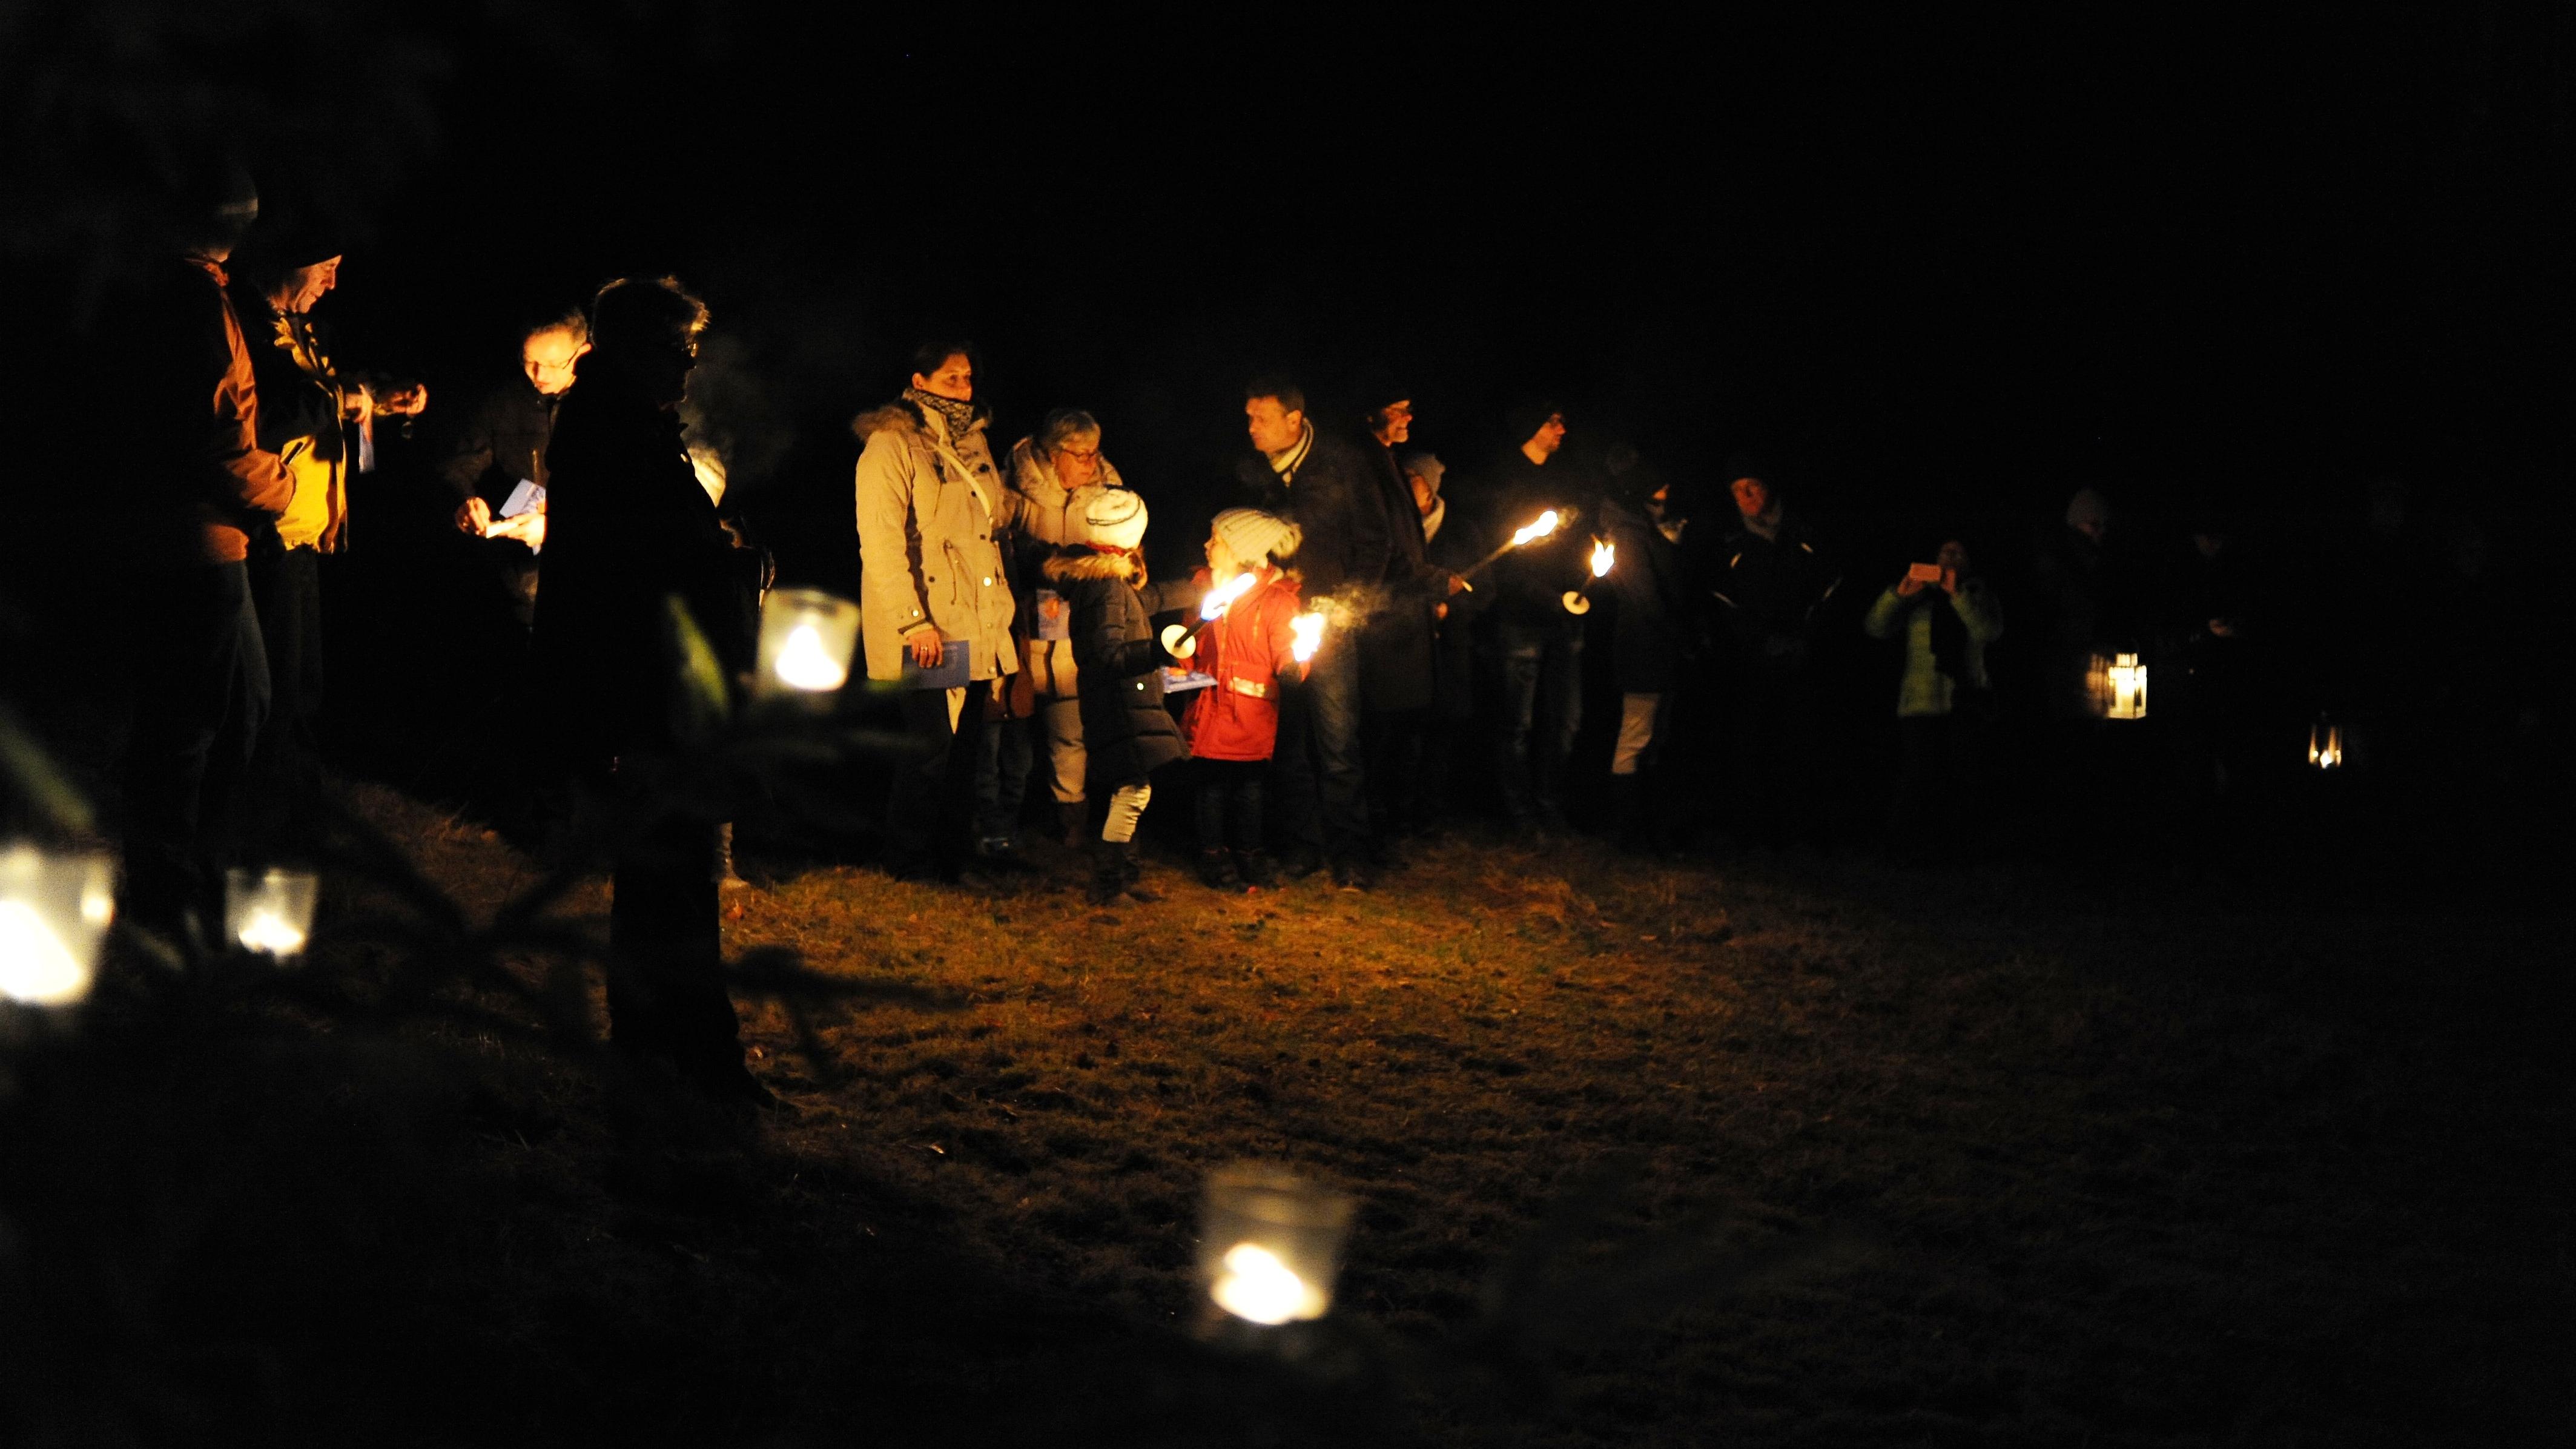 Waldweihnacht Deining, Menschen mit Laternen; Foto M. Murner